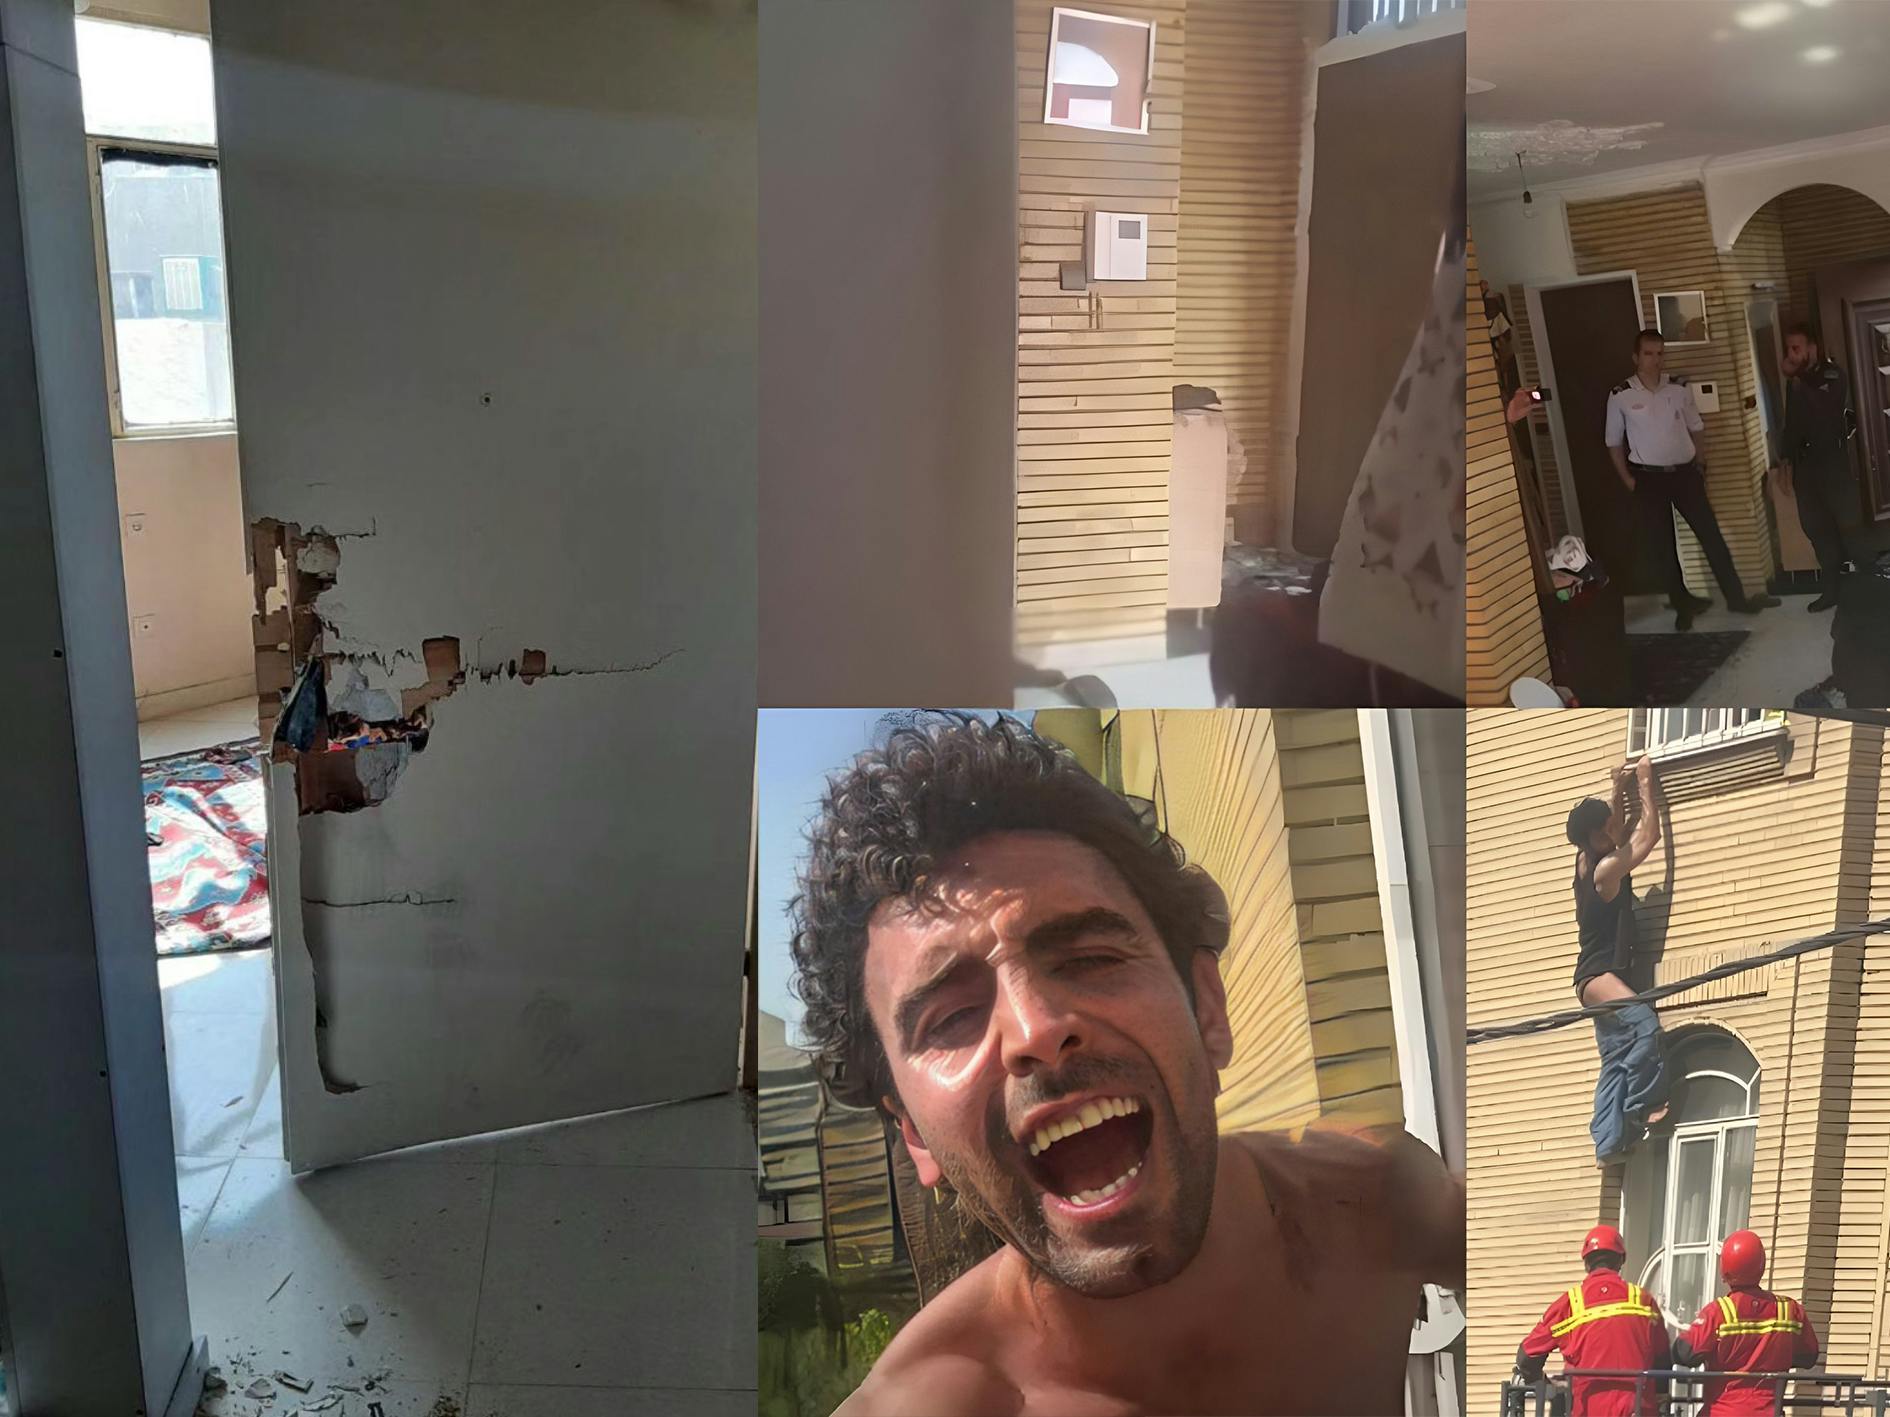 چند تصویر از لایو محمد صادقی در لحظه بازداشت و عکسی از در شکسته خانه سپیده رشنو در بازداشت یک سال پیش او.